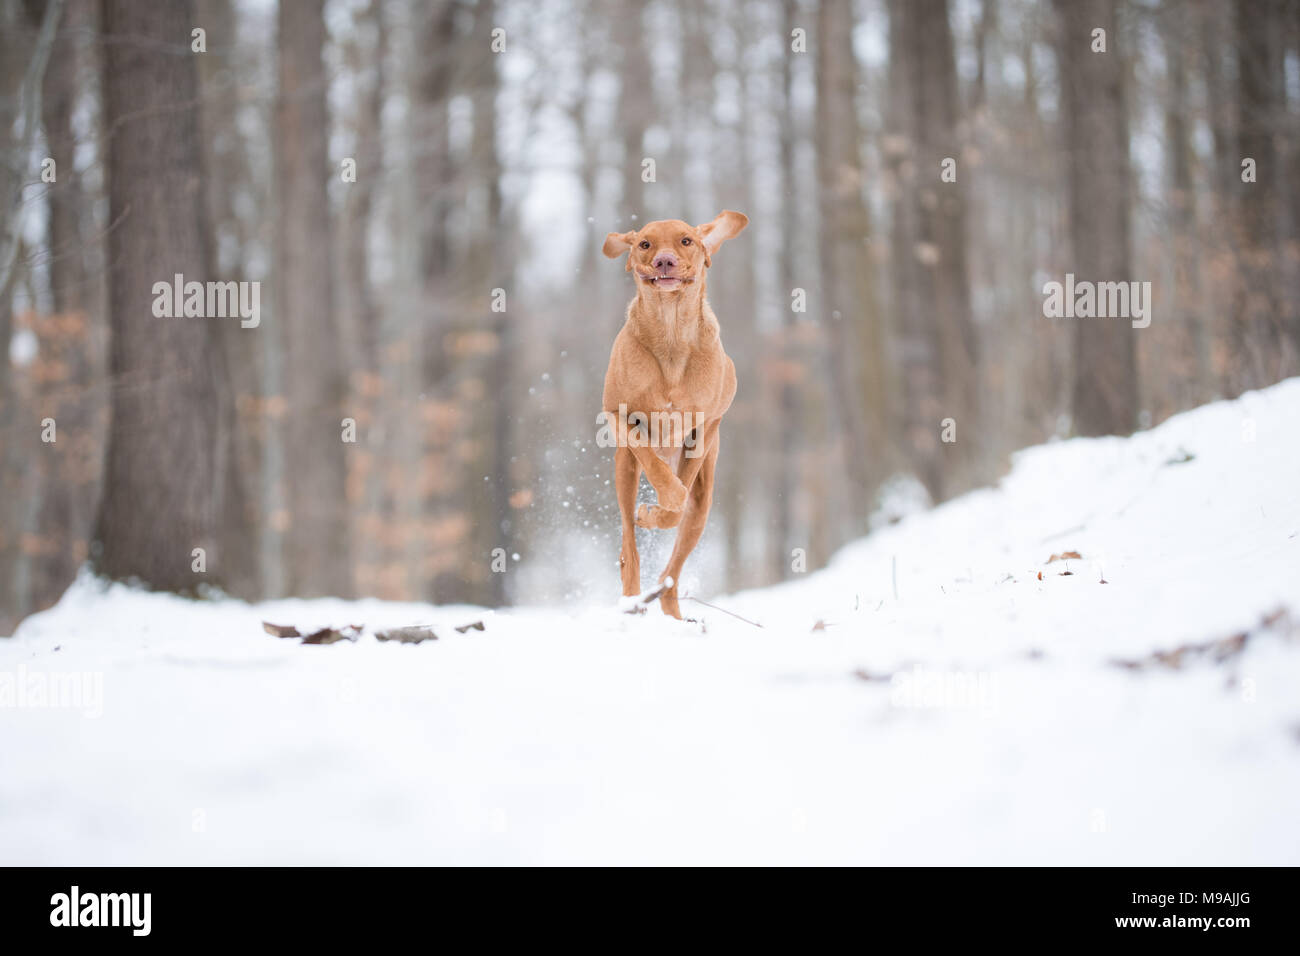 Crazy Foto der laufenden Ungarische Vizsla Zeiger Hund auf Schnee Stockfoto